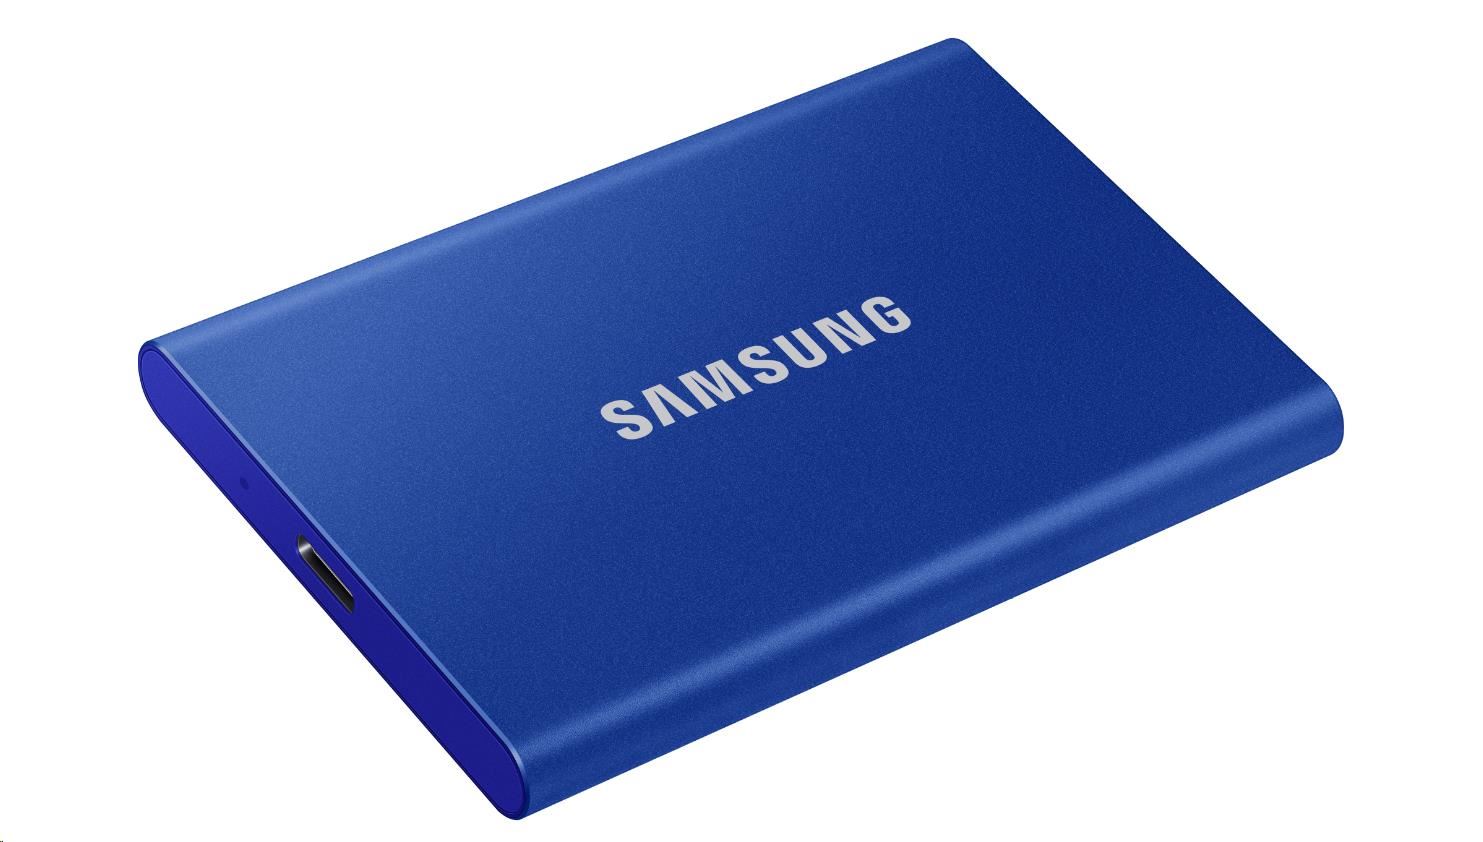 Externý disk SSD Samsung - 1 TB - modrý4 